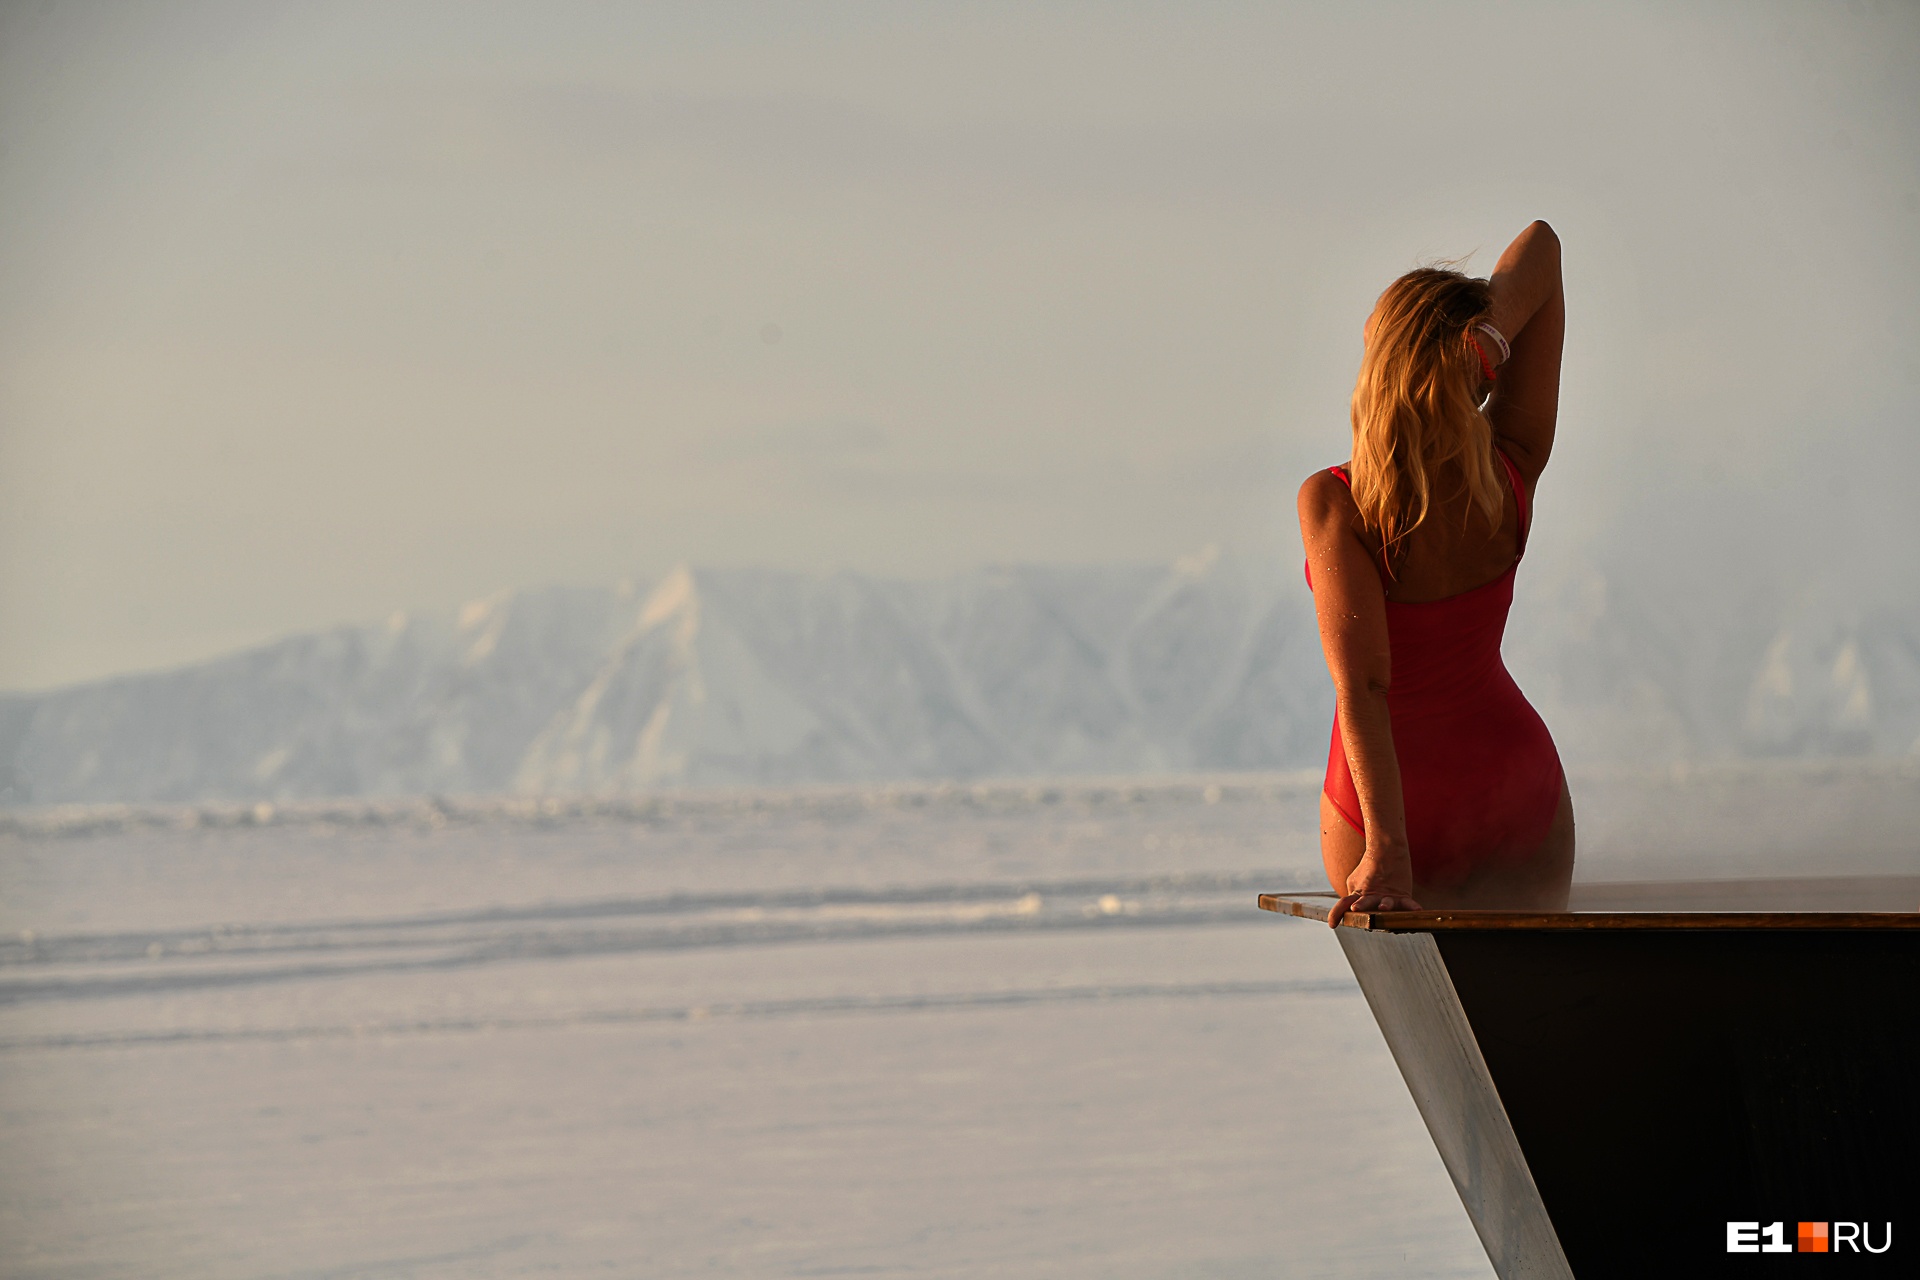 «Поцелуй Байкала», красотки в купальниках и уазик во льдах: фоторепортаж с самого глубокого озера в мире